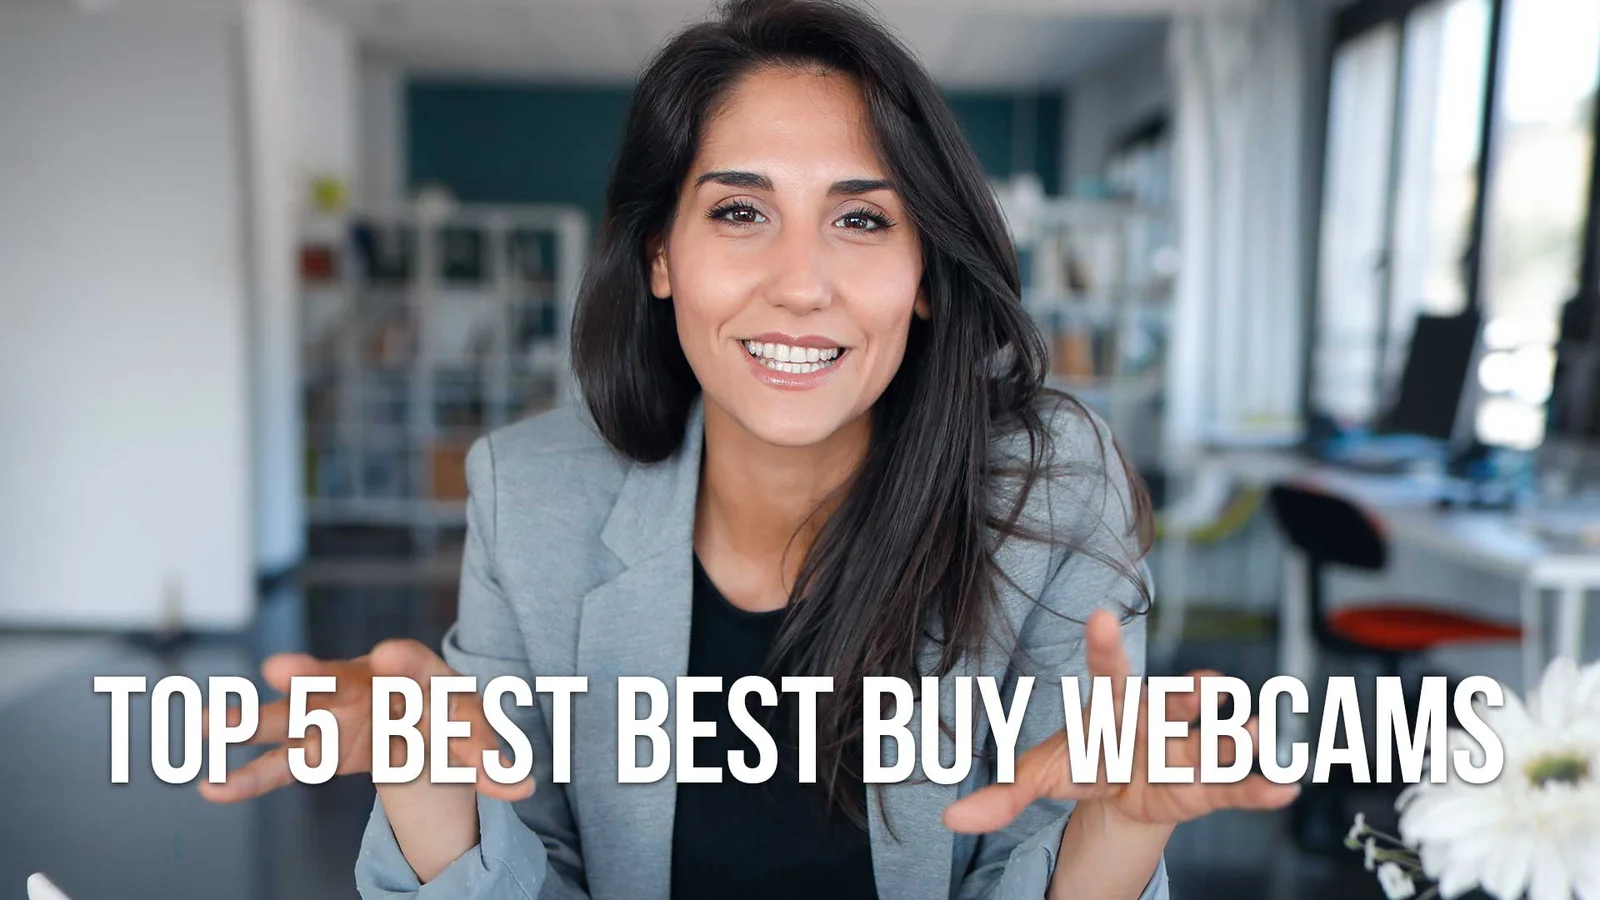 Top 5 Best Best Buy Webcams